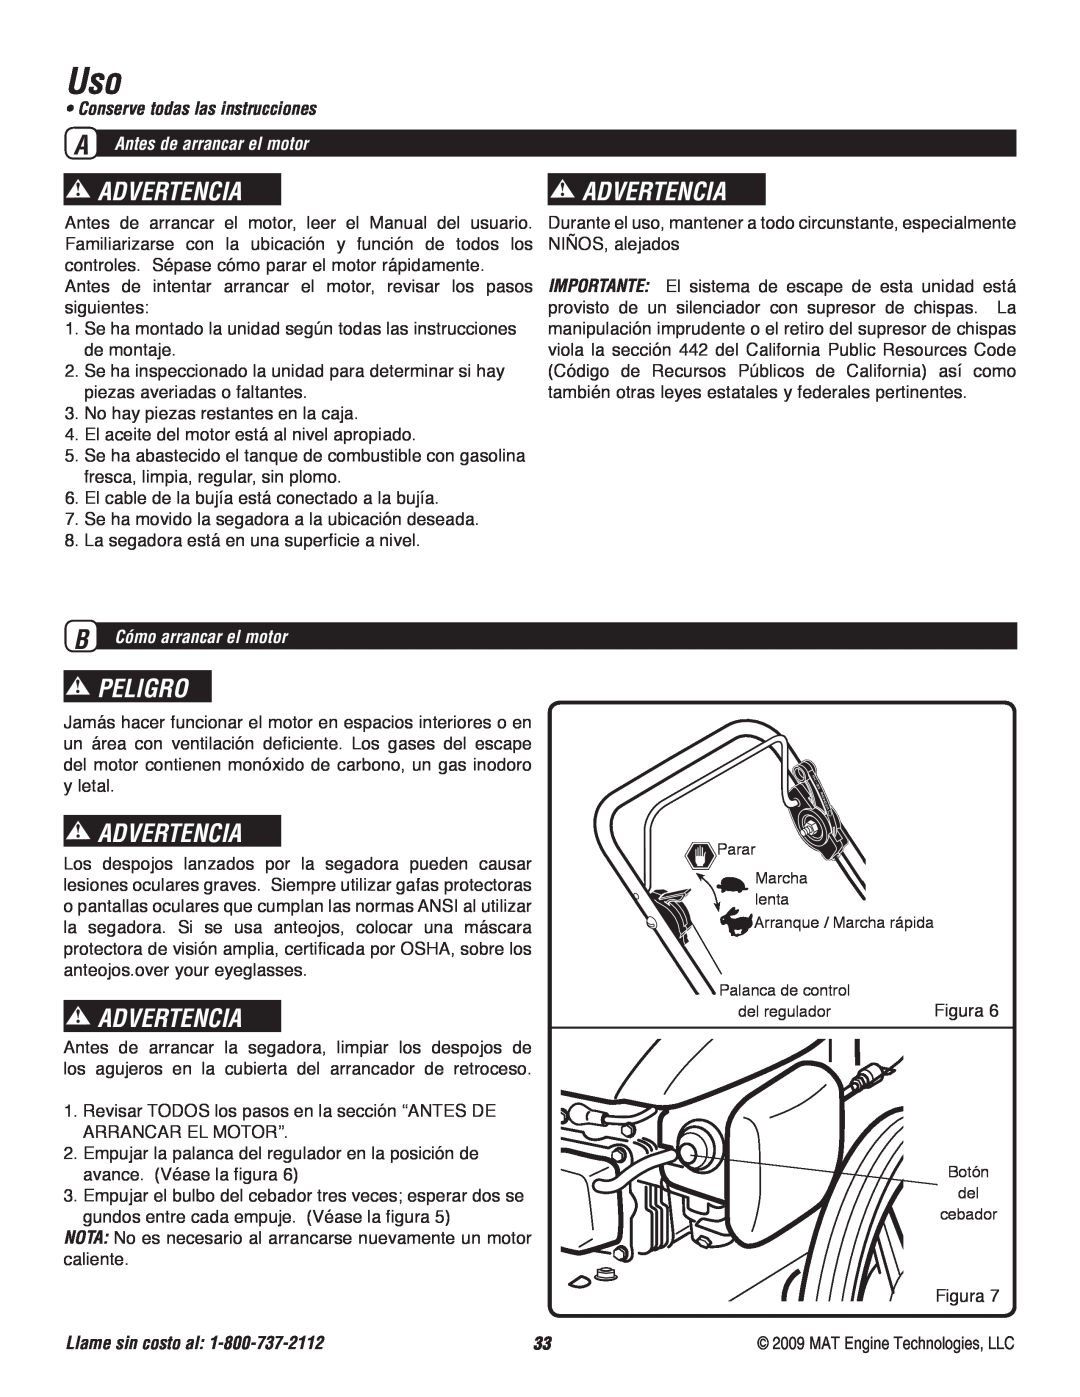 Powermate P-WFT-16022 specifications Advertencia, Peligro, Conserve todas las instrucciones, A Antes de arrancar el motor 